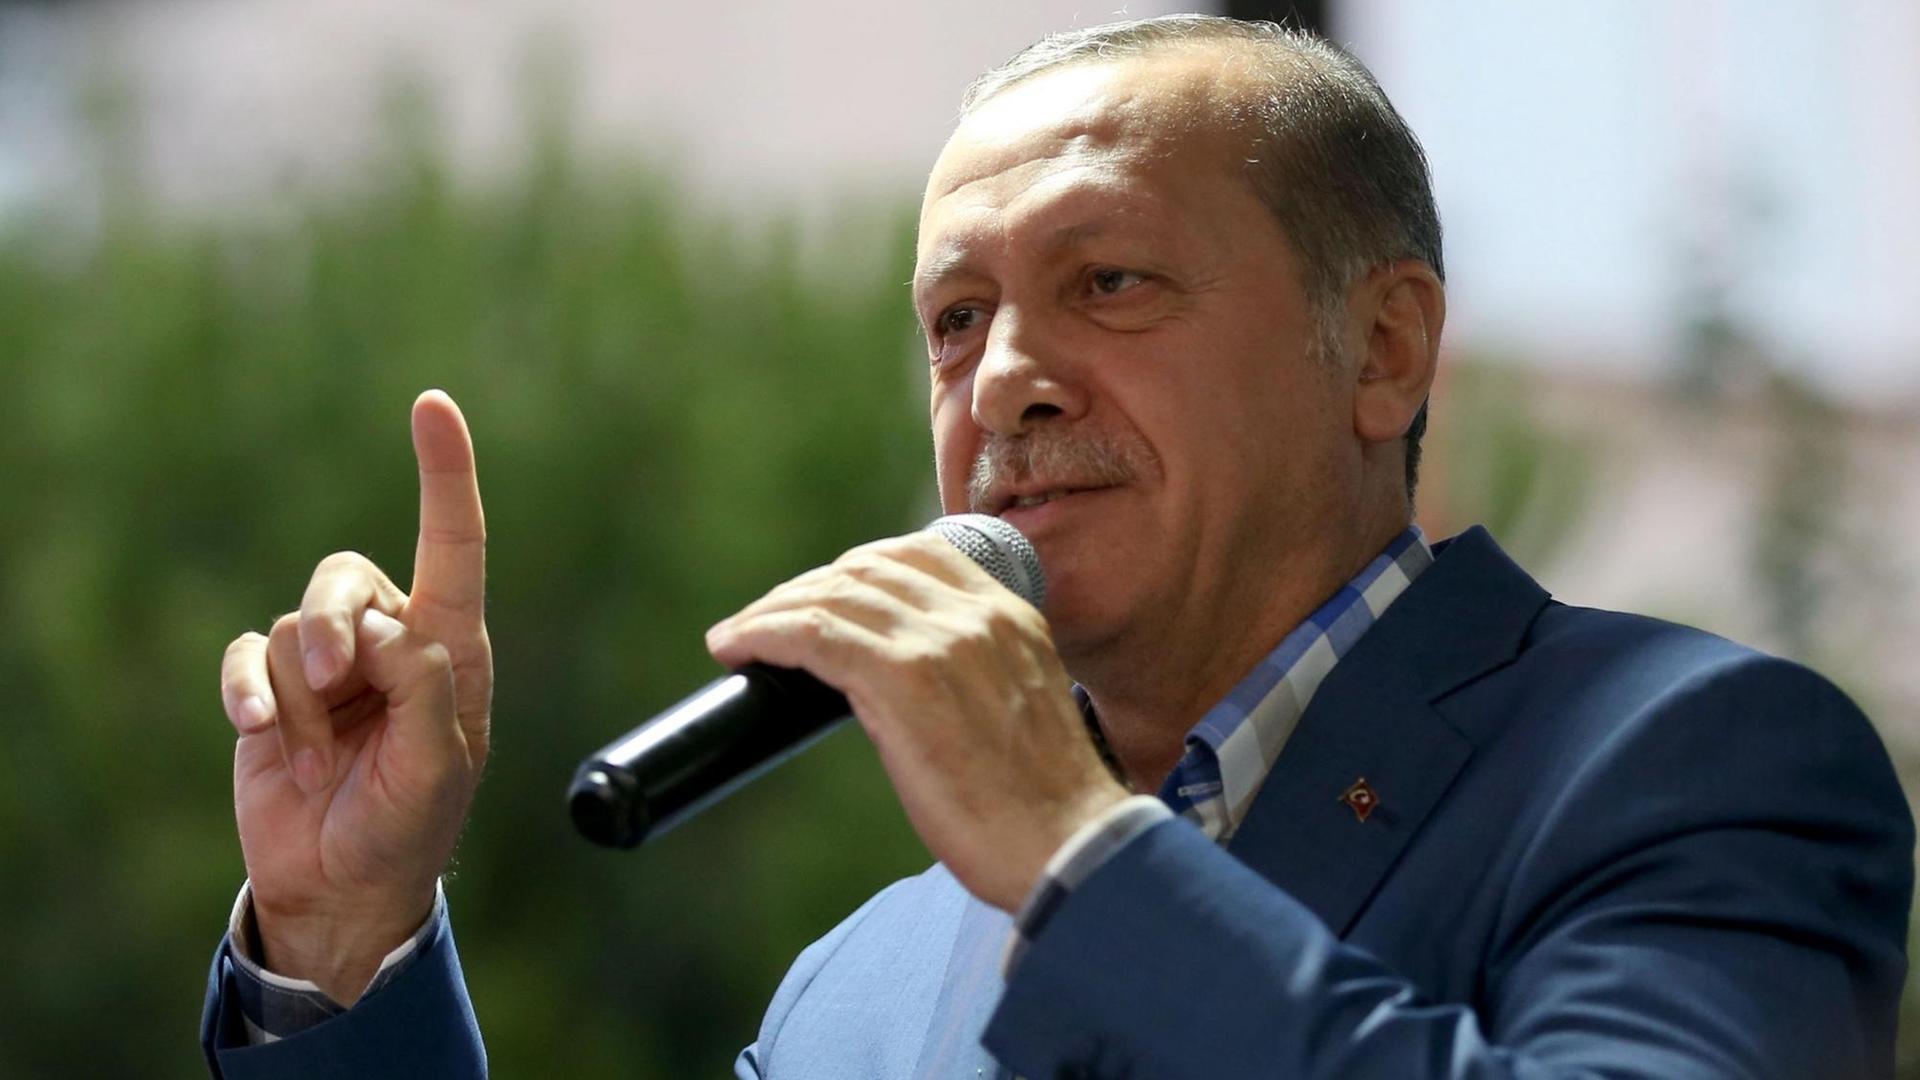 Der türkische Präsident Recep Tayyip Erdogan spricht nach dem gescheiterten Putschversuch in Istanbul zu seinen Anhängern.